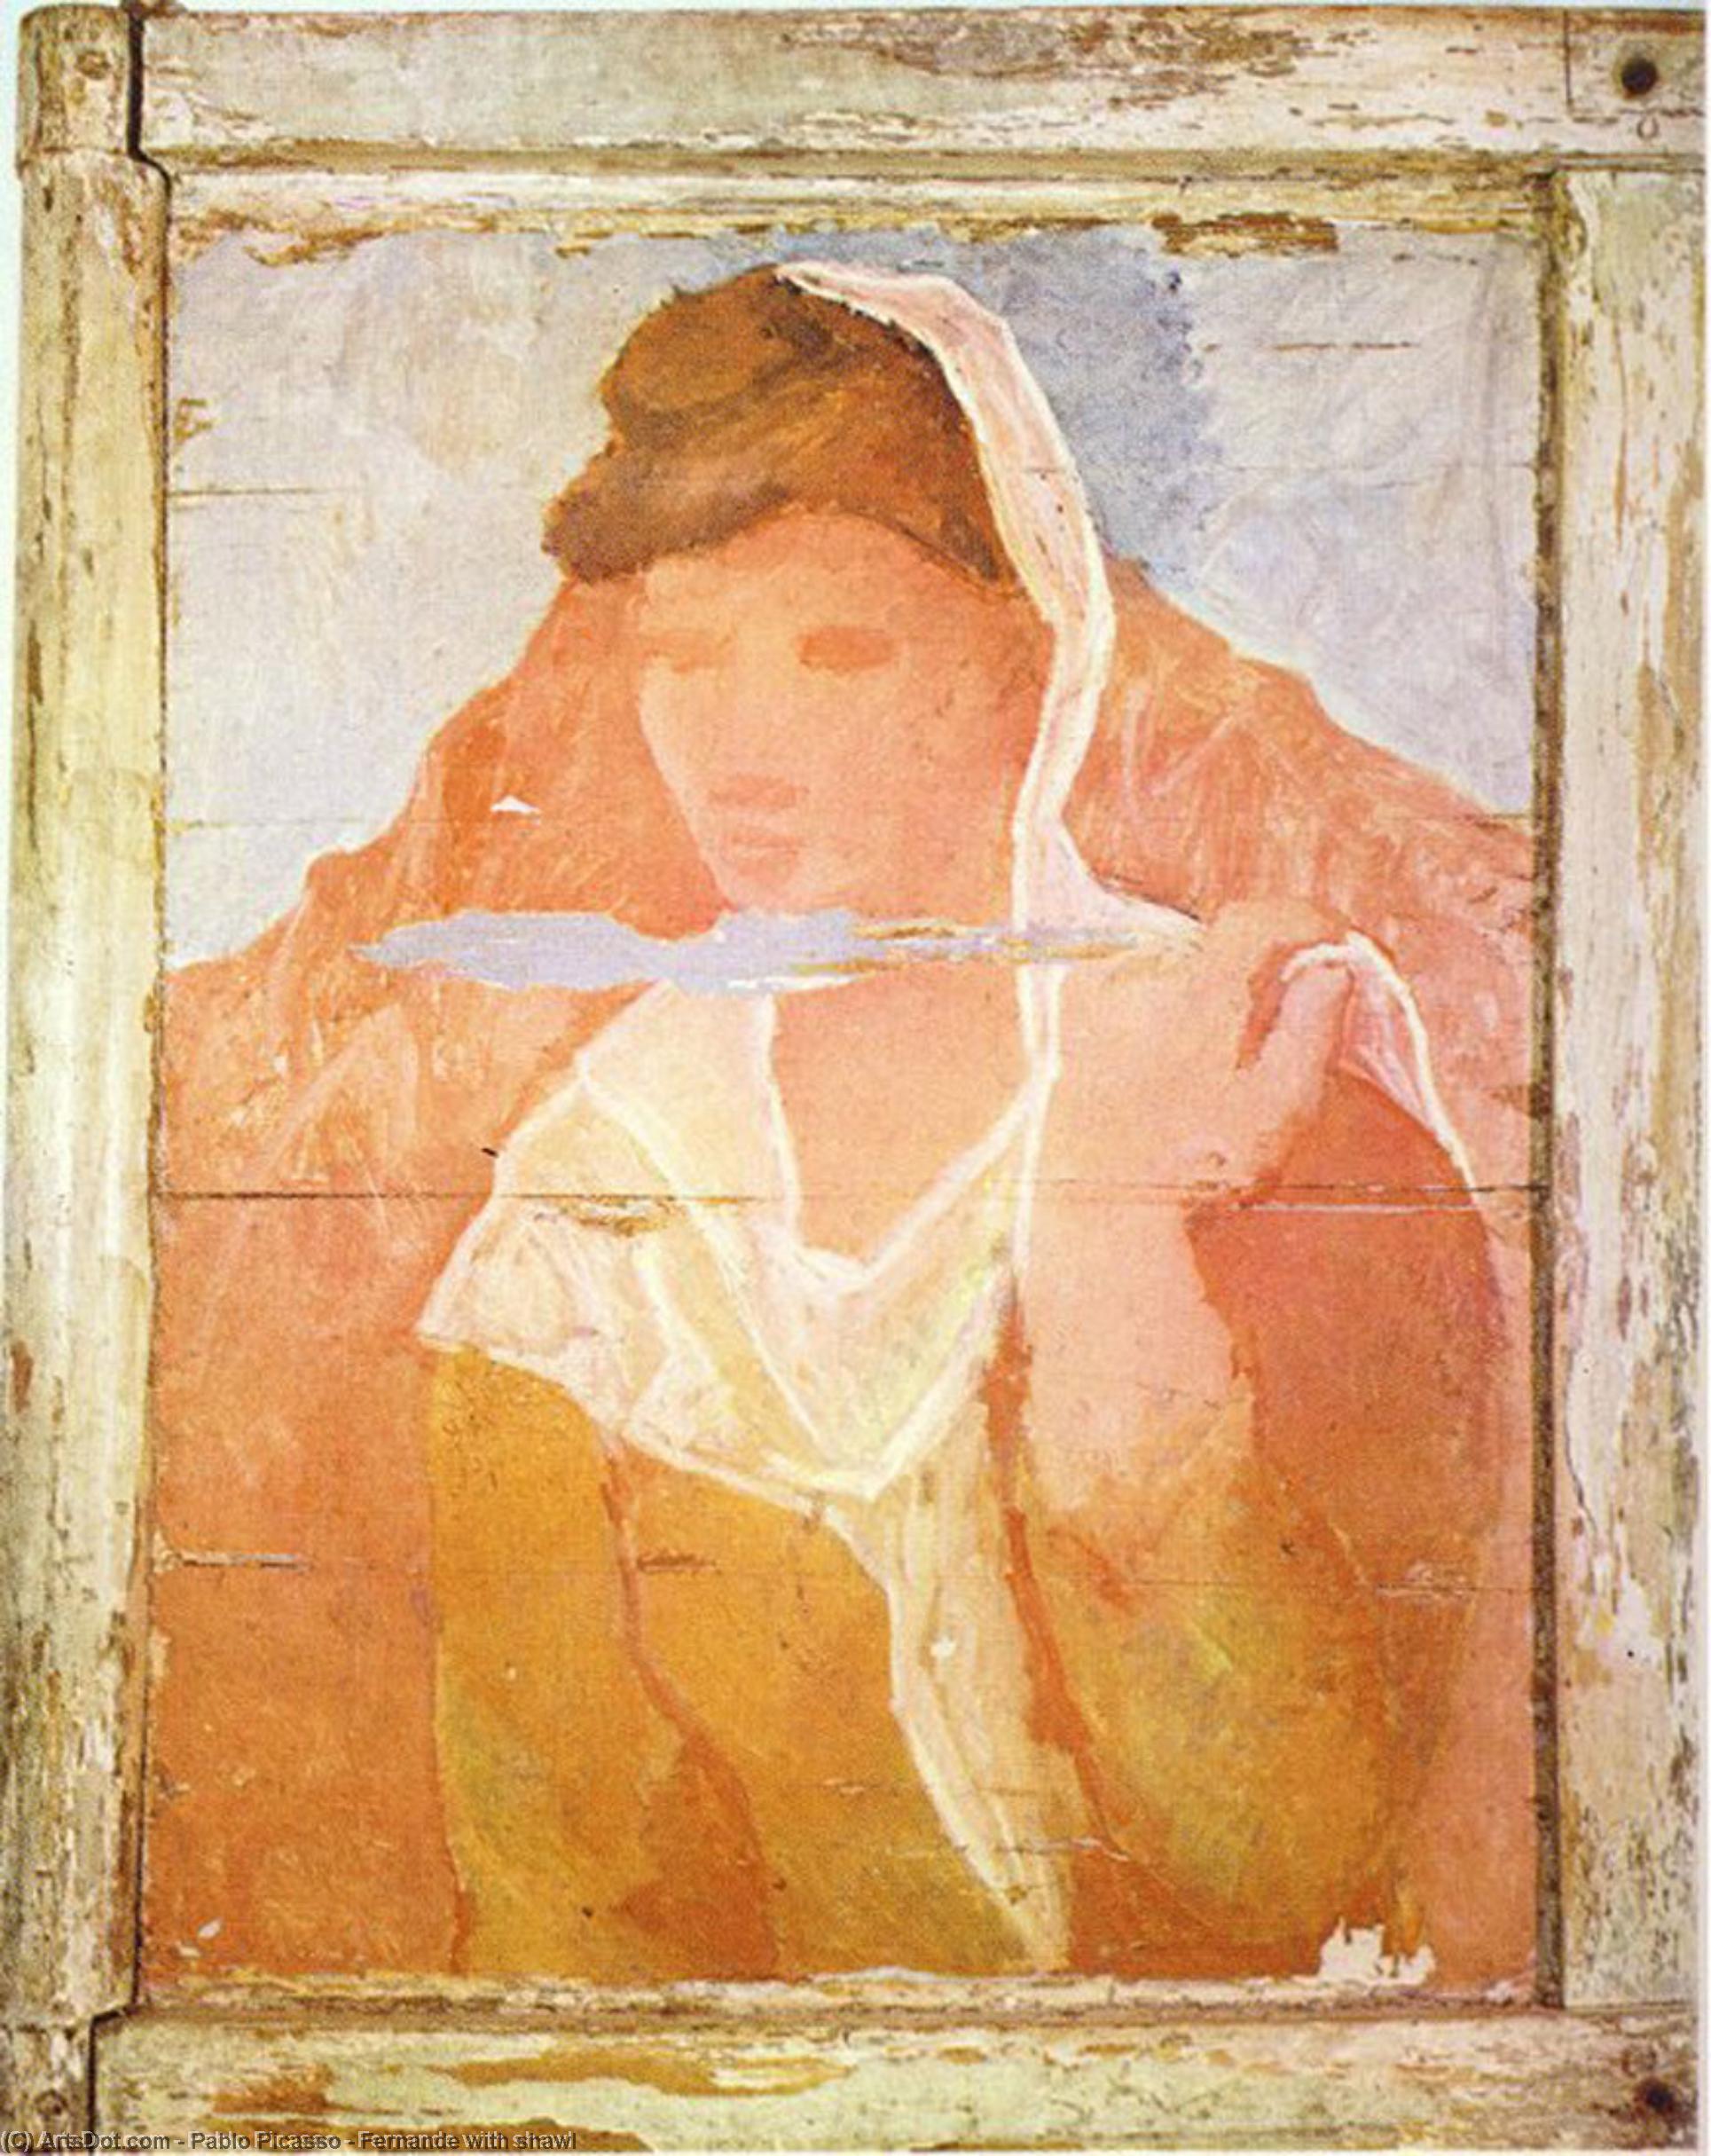 WikiOO.org - Енциклопедія образотворчого мистецтва - Живопис, Картини
 Pablo Picasso - Fernande with shawl